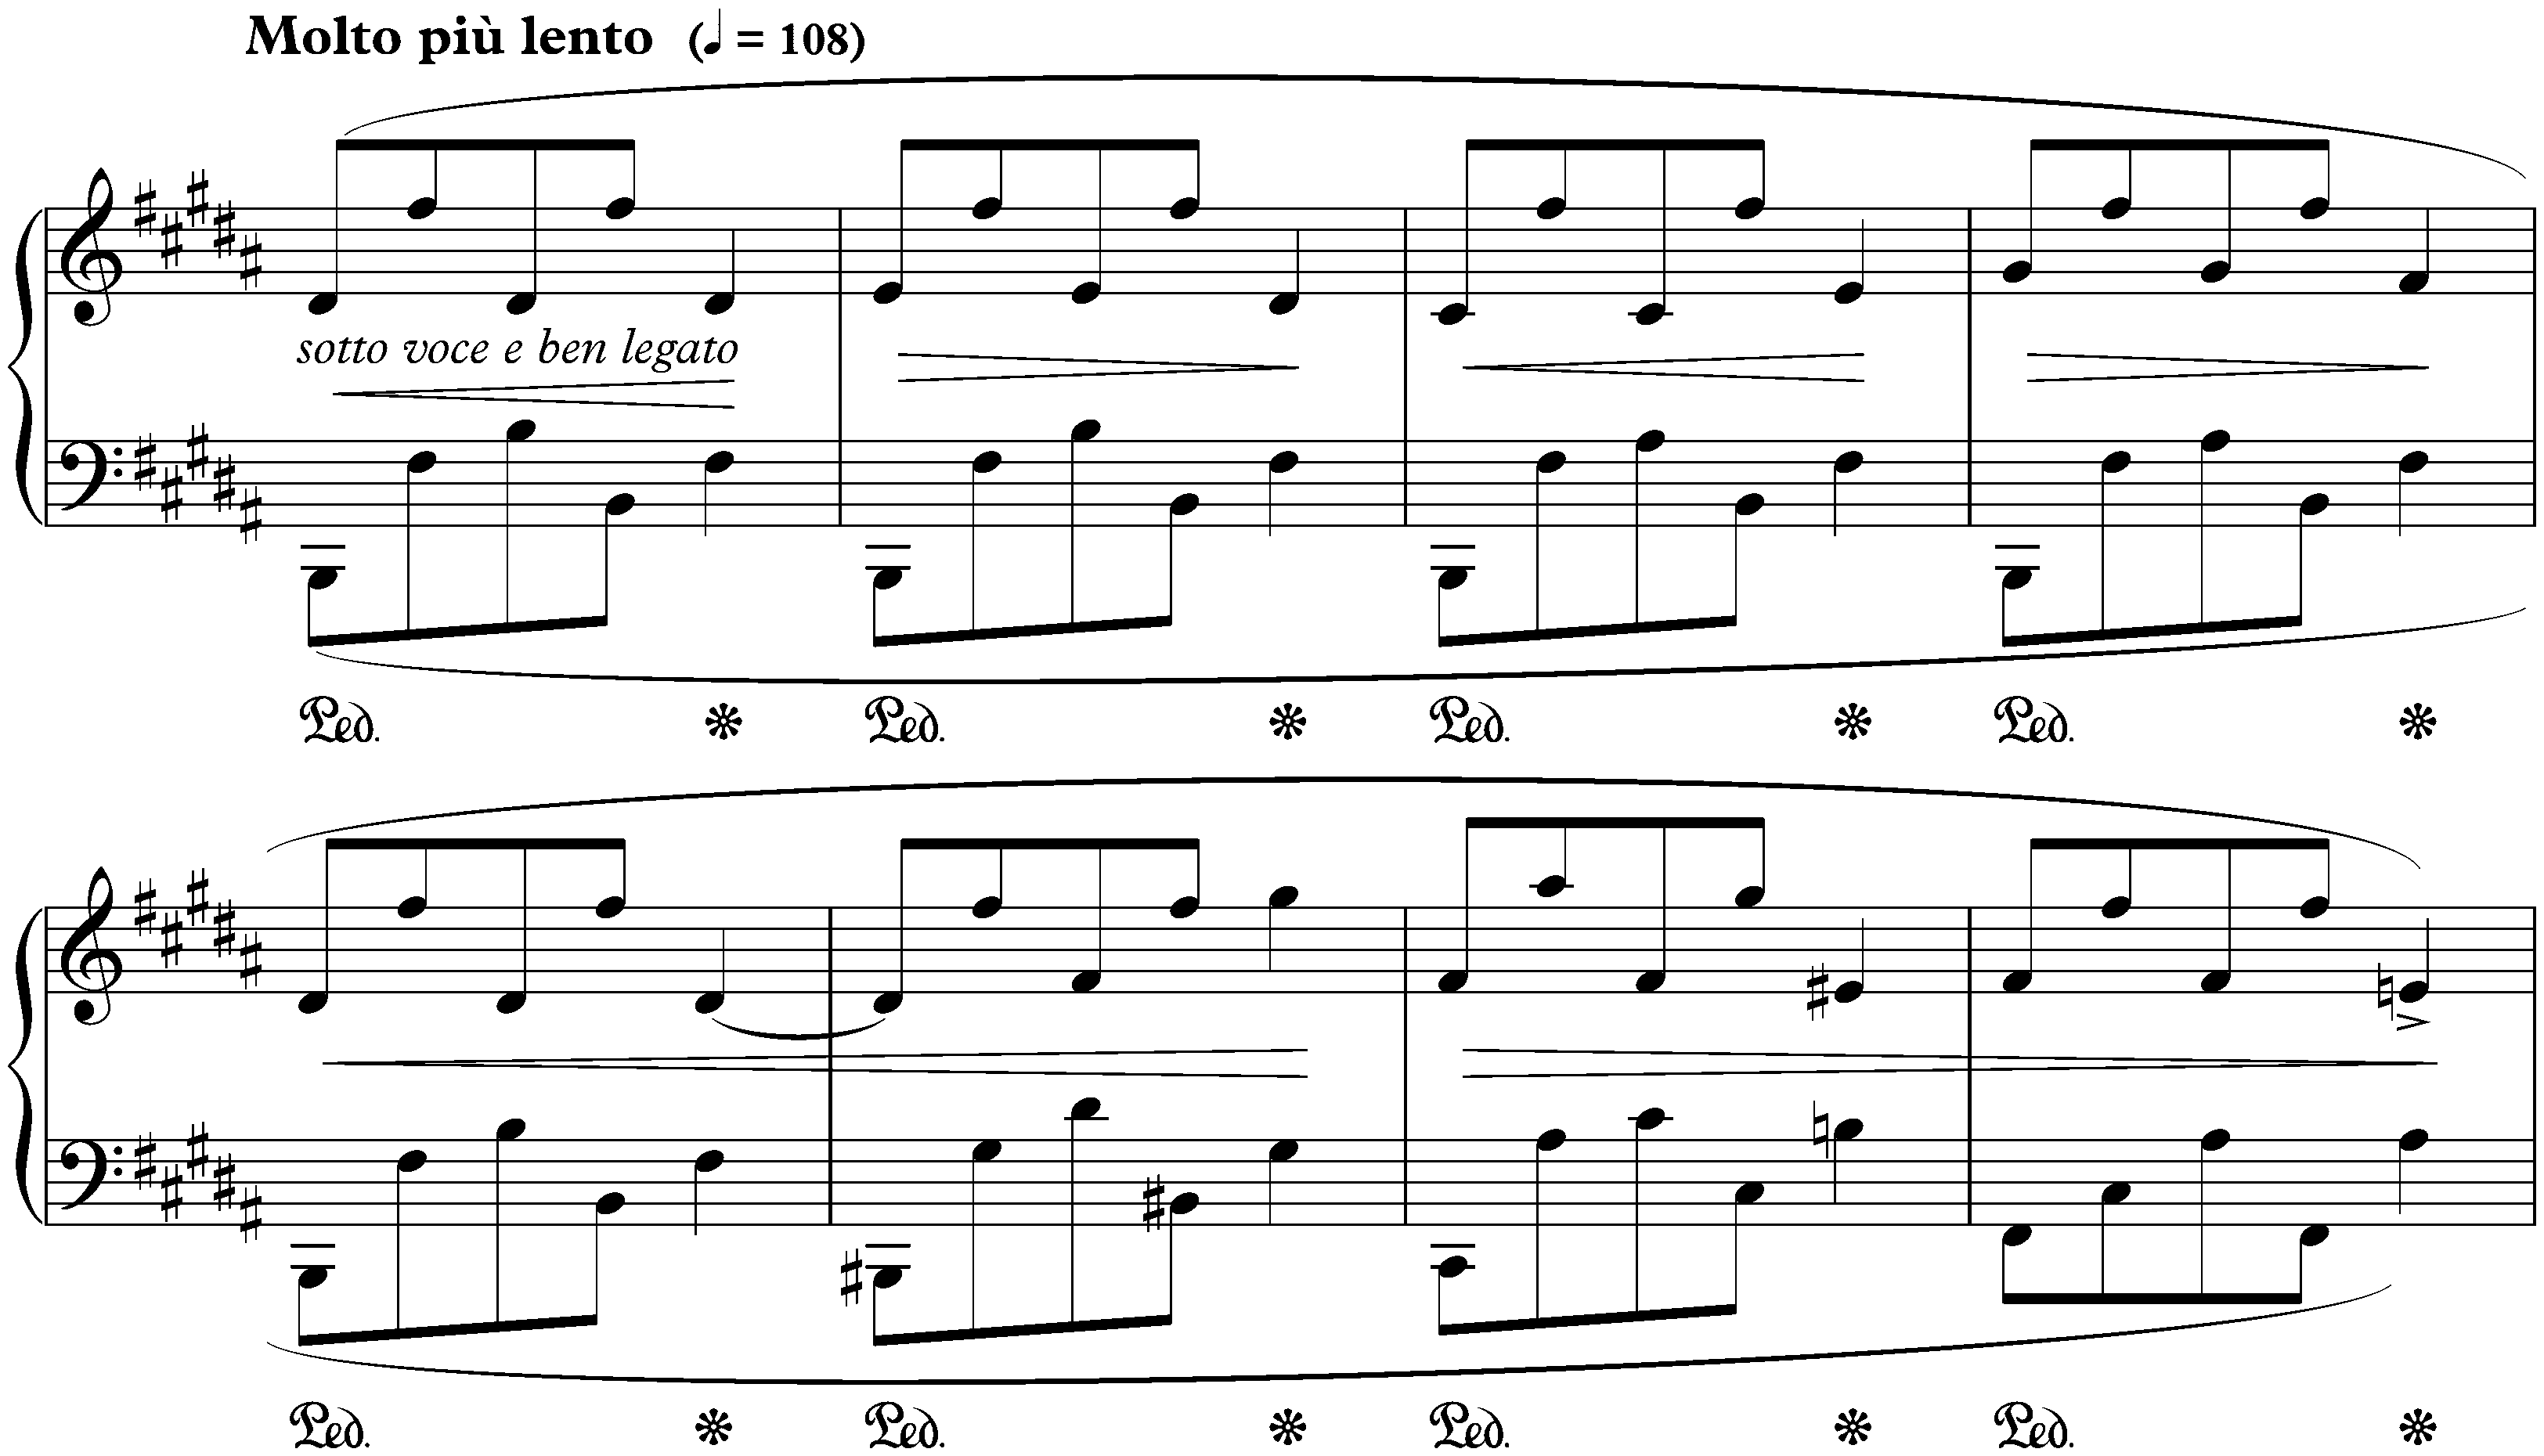 Scherzo no. 1 in B minor, op. 20